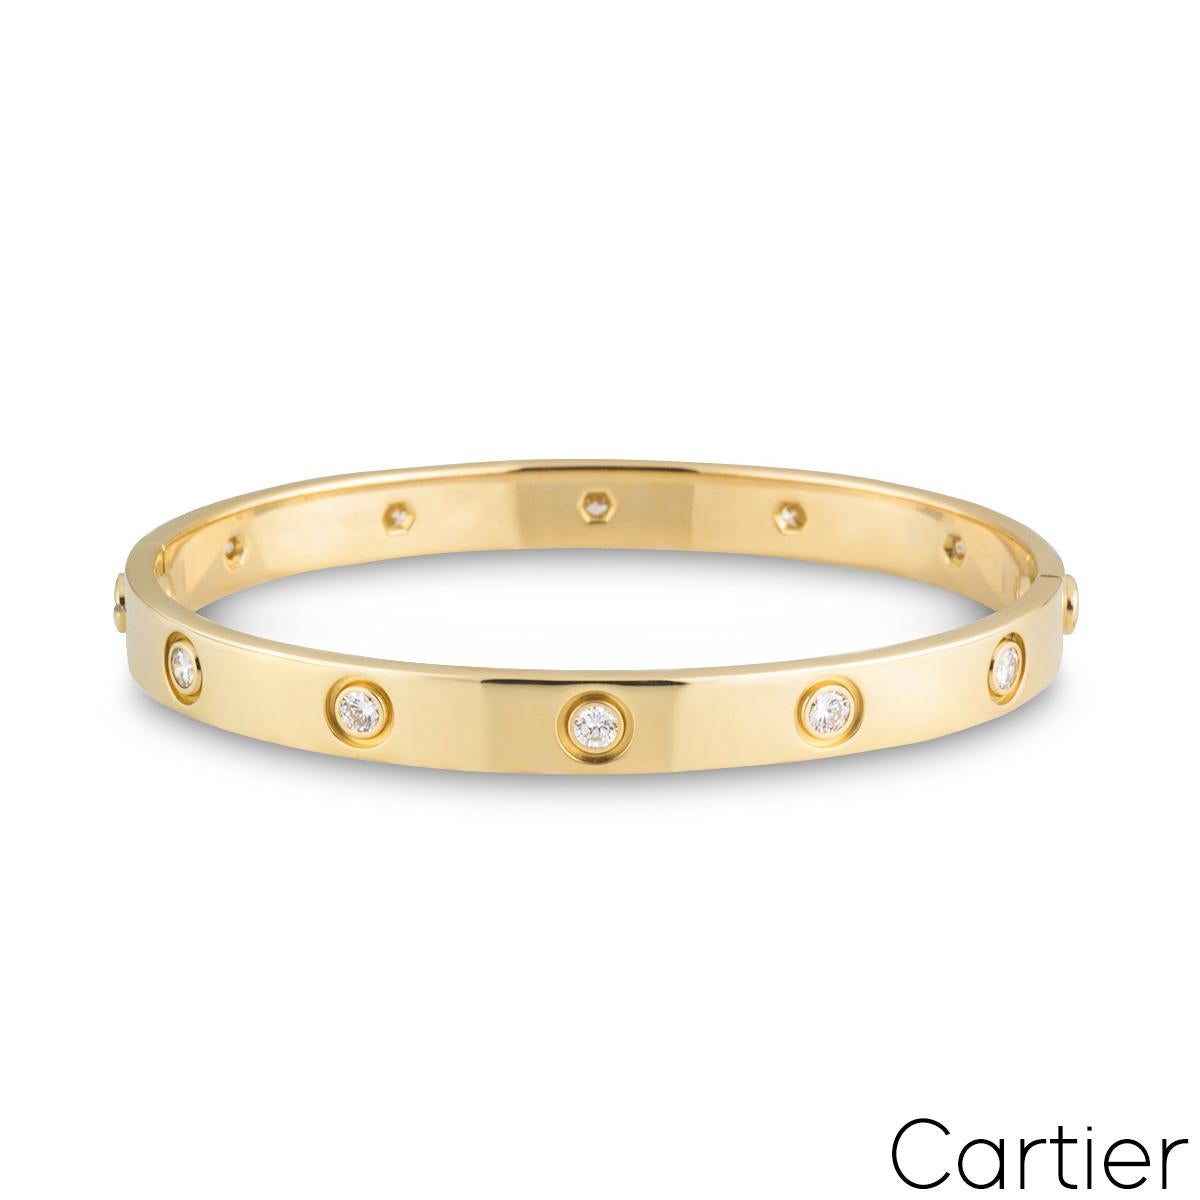 Un bracelet iconique en or jaune 18k plein diamant de Cartier de la collection Love. Le bracelet est serti de 10 diamants ronds de taille brillante dans une monture en rubis entourant le bord extérieur pour un total de 0,96 ct. Le bracelet est de